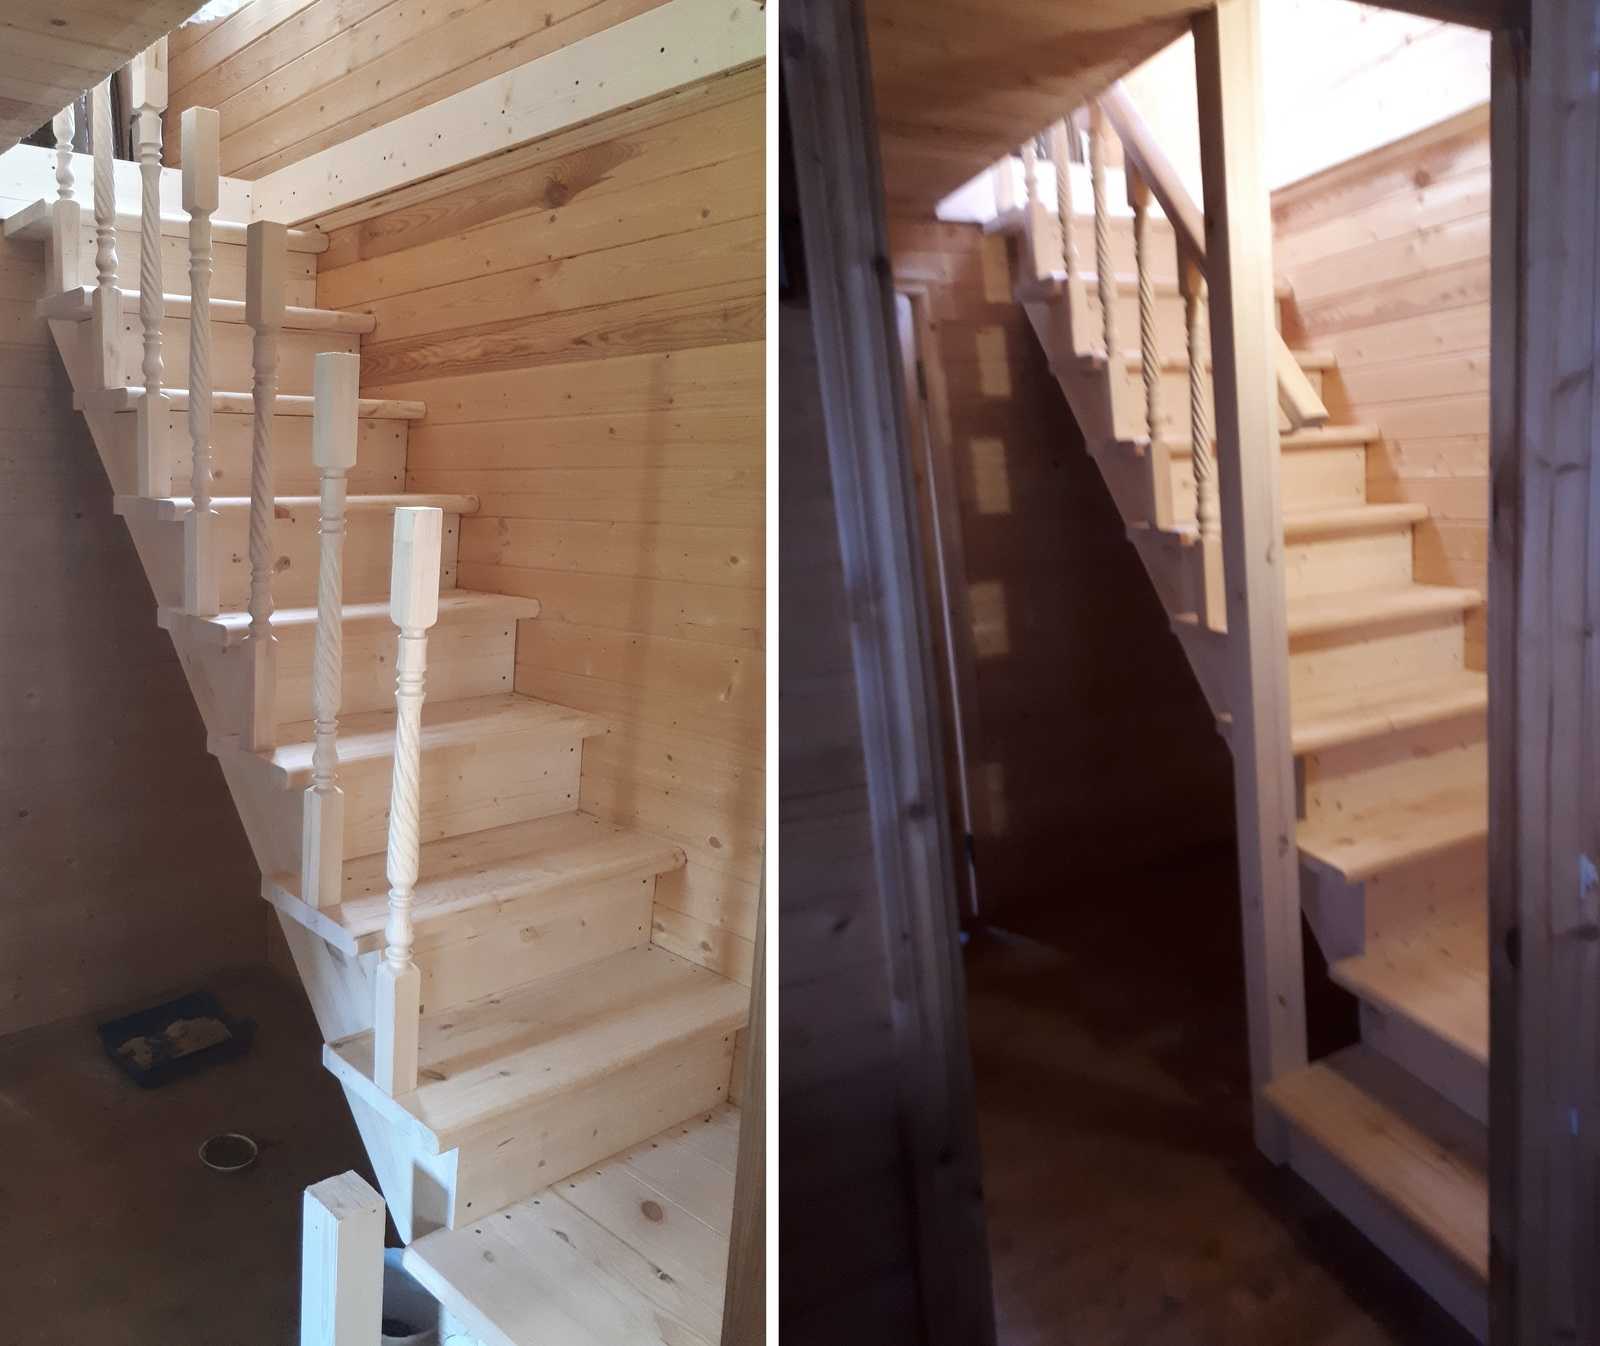 Монтаж лестниц: изготовление и установка, устройство конструкции, как собрать самостоятельно, инструкция по креплению изделия к перекрытию